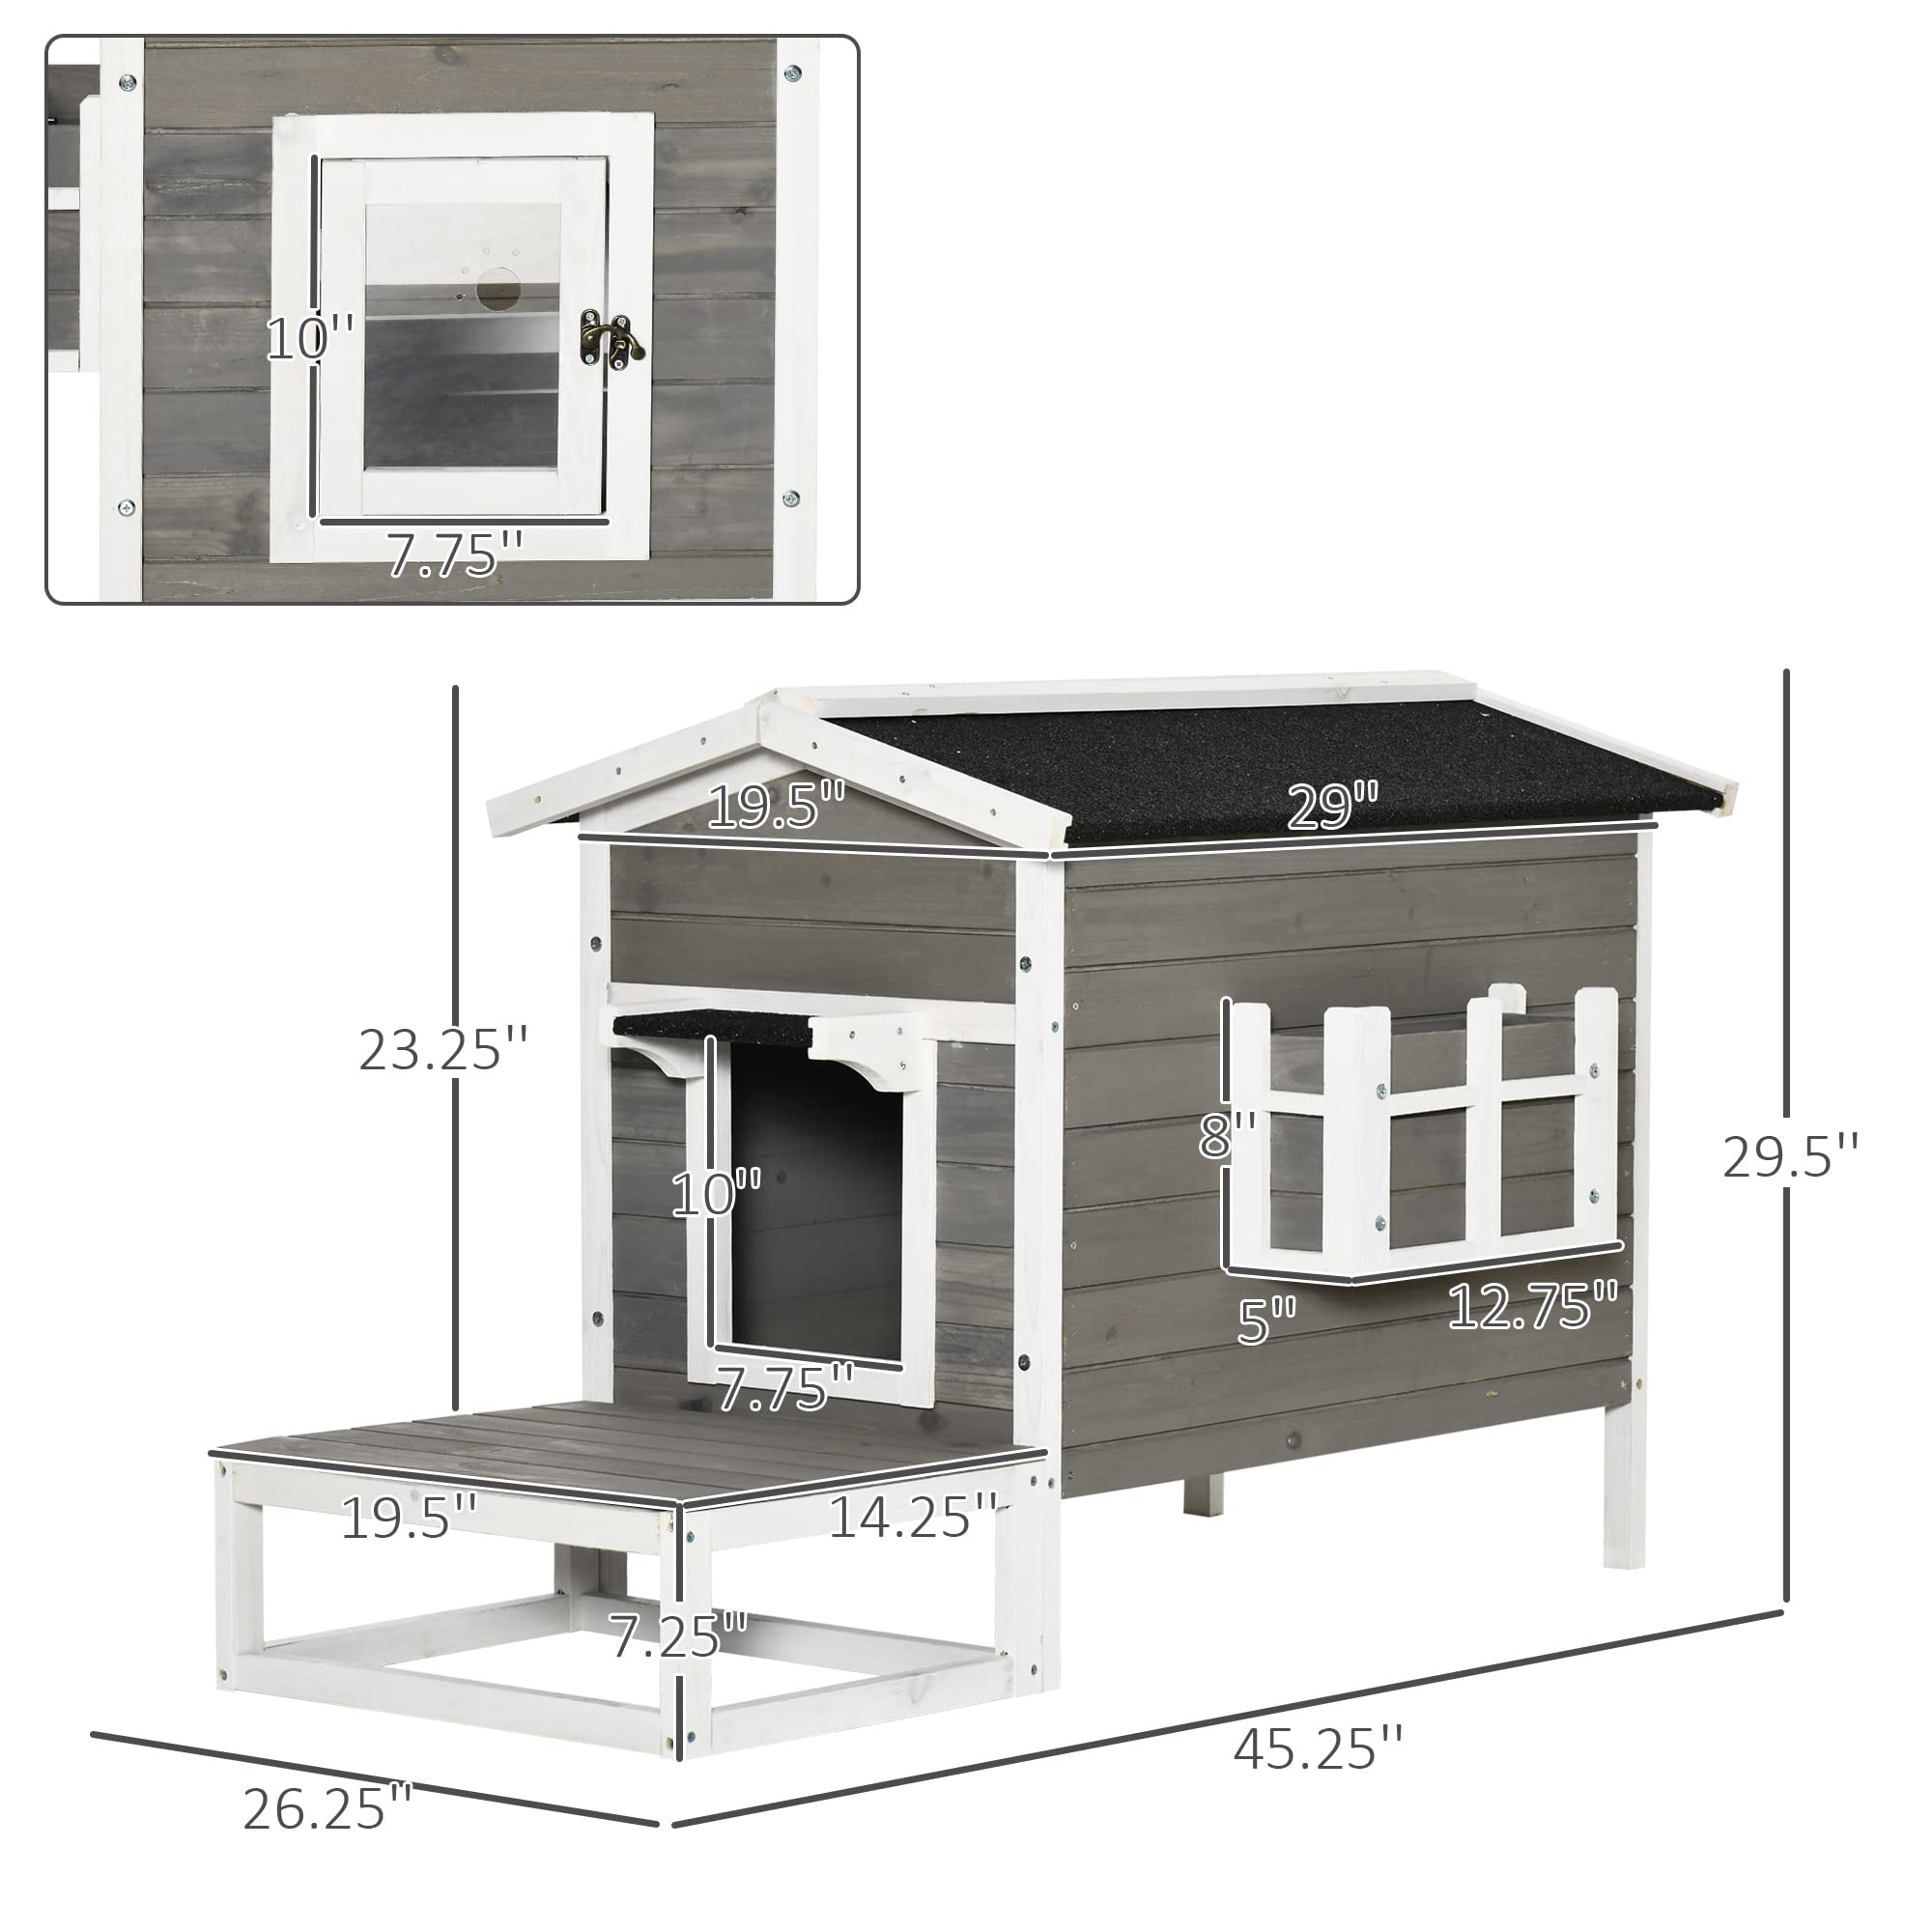 PawHut Wooden Cat House Outdoor with Door, Weatherproof 2-Floor Cat Shelter with Asphalt Roof, Balcony, Dark Gray